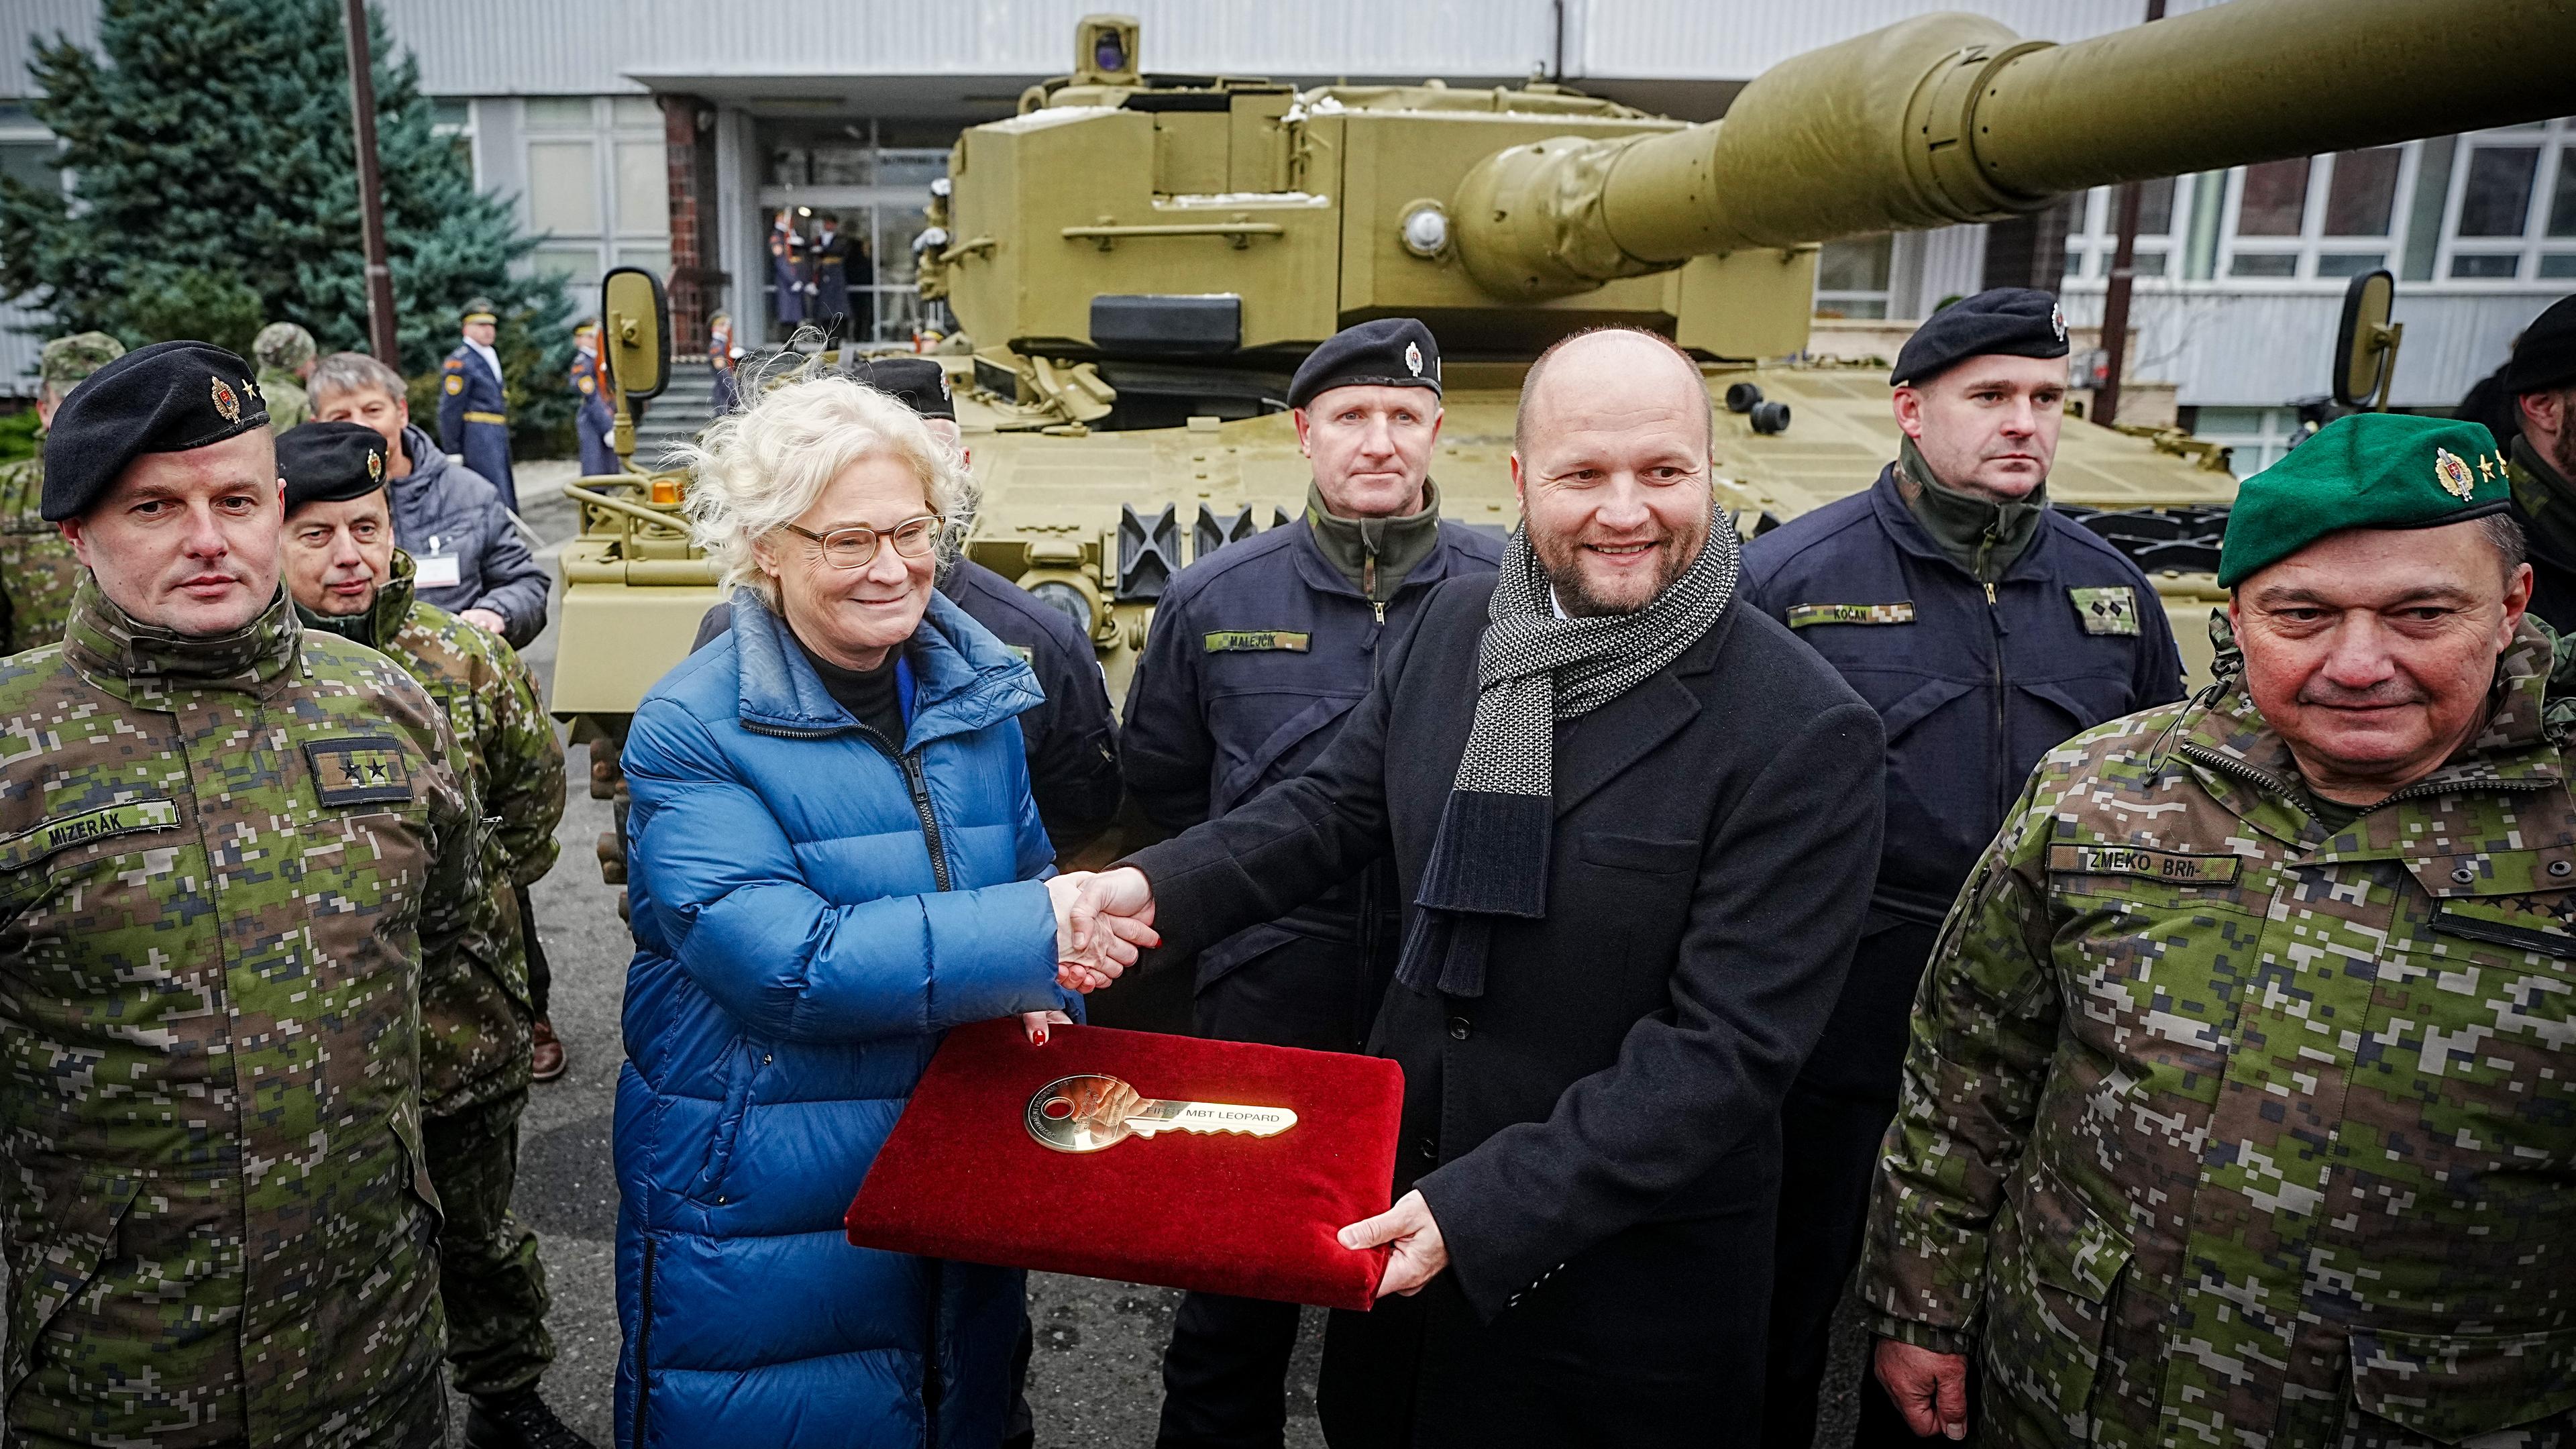 Slowakei, Bratislava: Christine Lambrecht (SPD), Bundesministerin der Verteidigung, übergibt symbolisch den Schlüssel an Jaroslav Nad, Verteidigungsminister der Slowakei, für den Leopard 2A4.